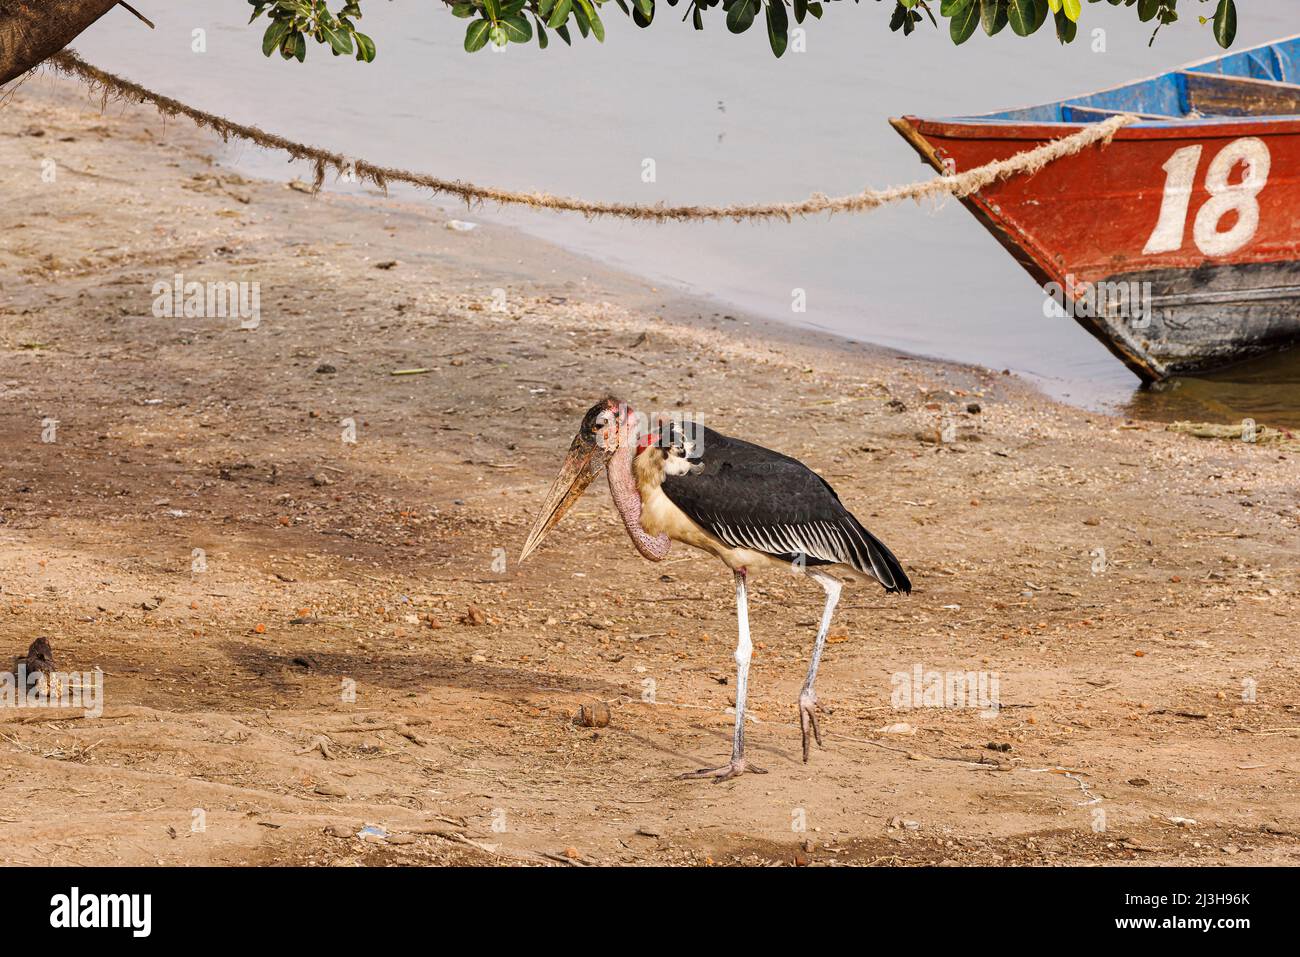 Uganda, Rubirizi district, Katunguru, Queen Elizabeth National Park, Marabou Stork Stock Photo